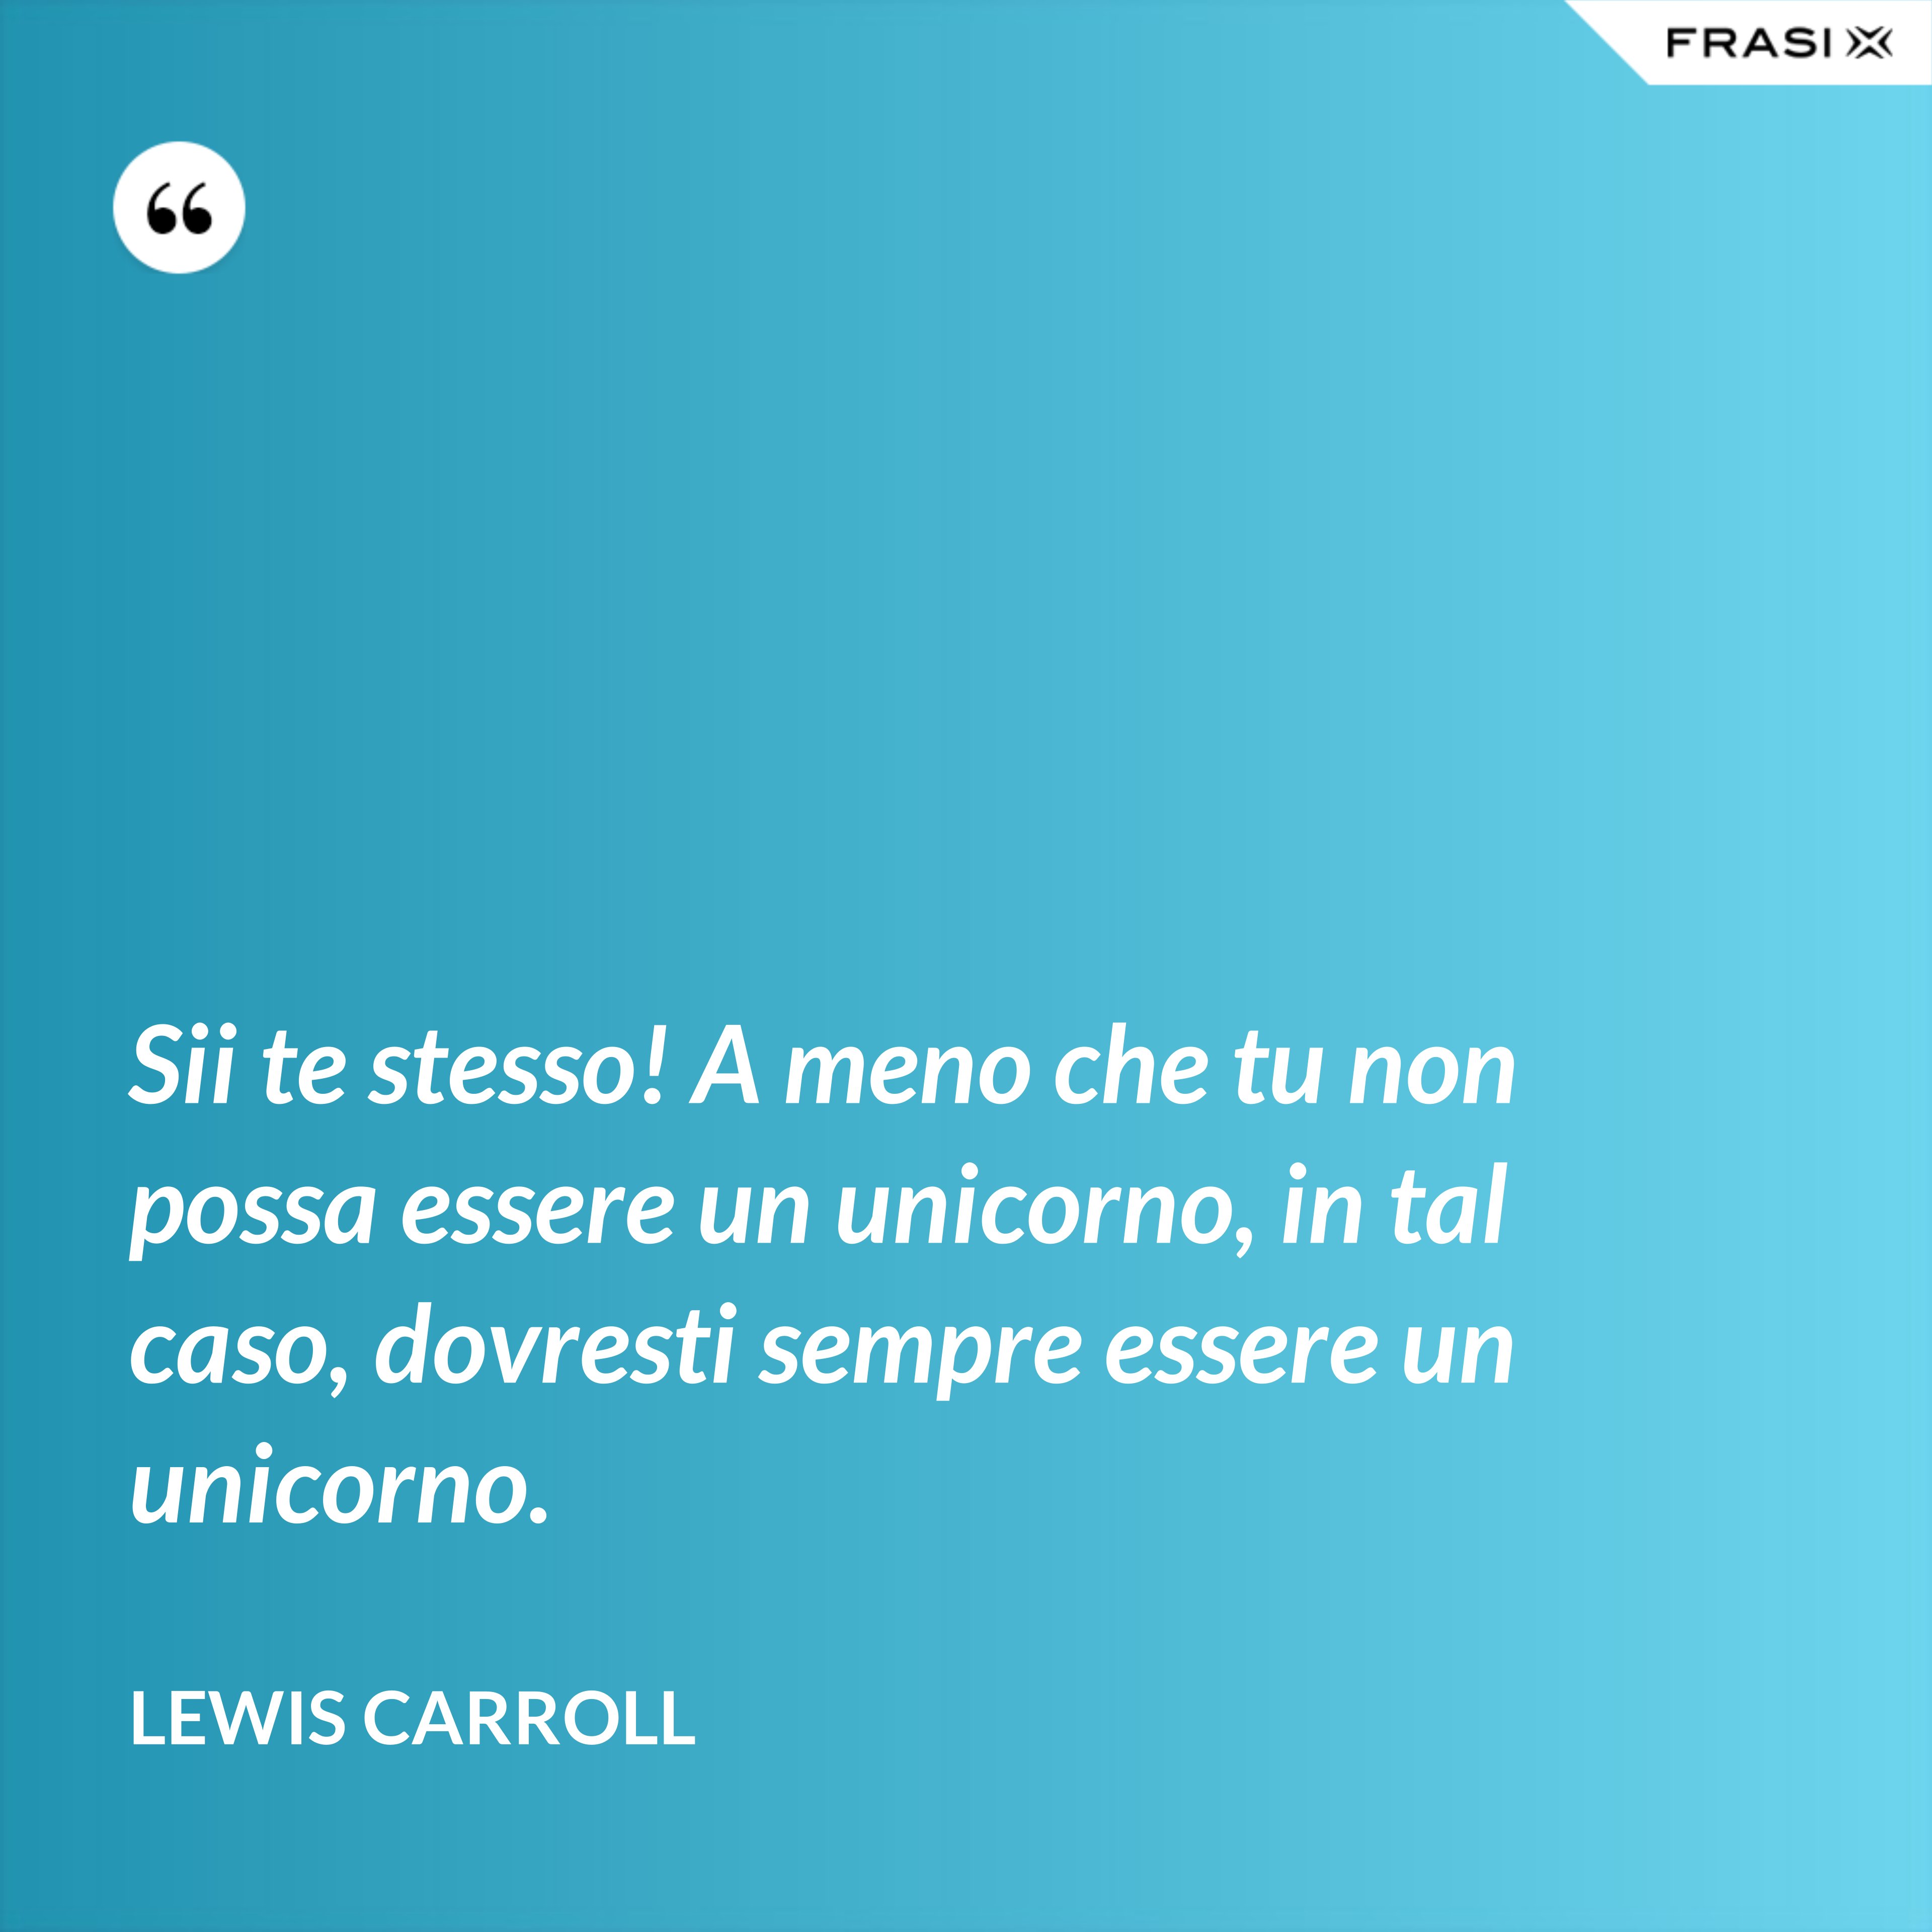 Sii te stesso! A meno che tu non possa essere un unicorno, in tal caso, dovresti sempre essere un unicorno. - Lewis Carroll